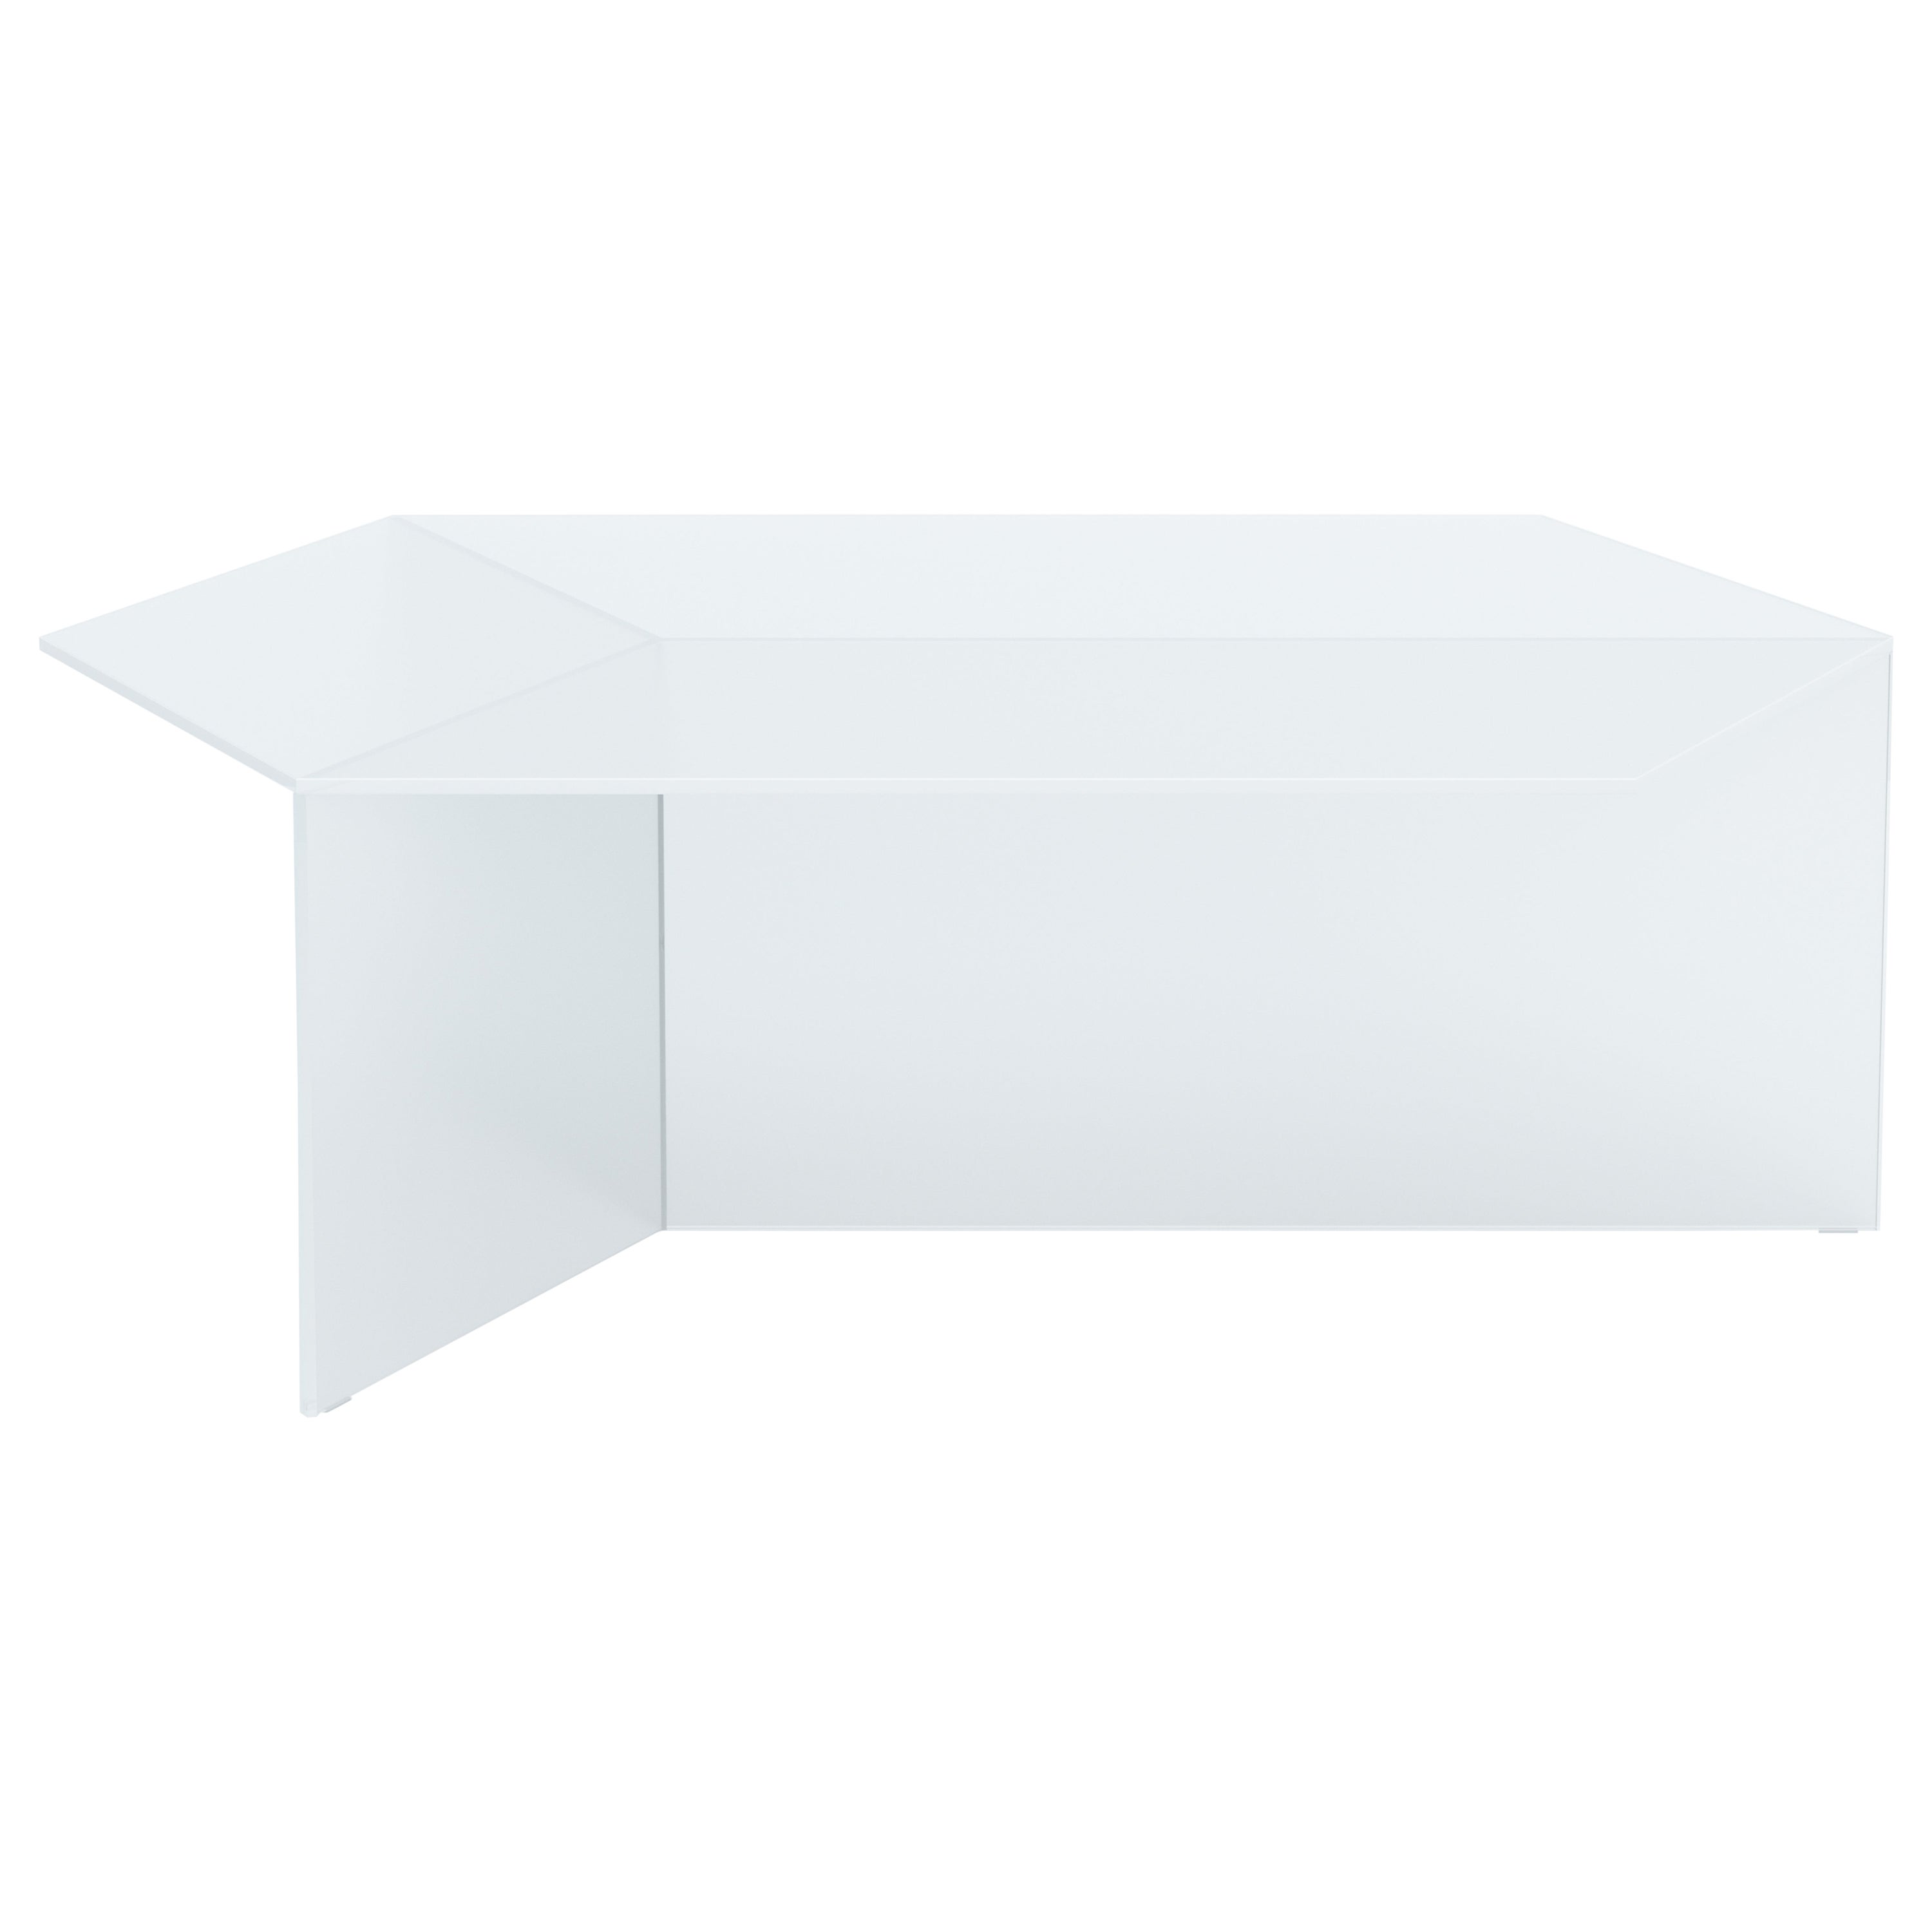 Table basse Isom oblong 120 cm en verre satiné blanc, Sebastian Scherer Neo/Craft